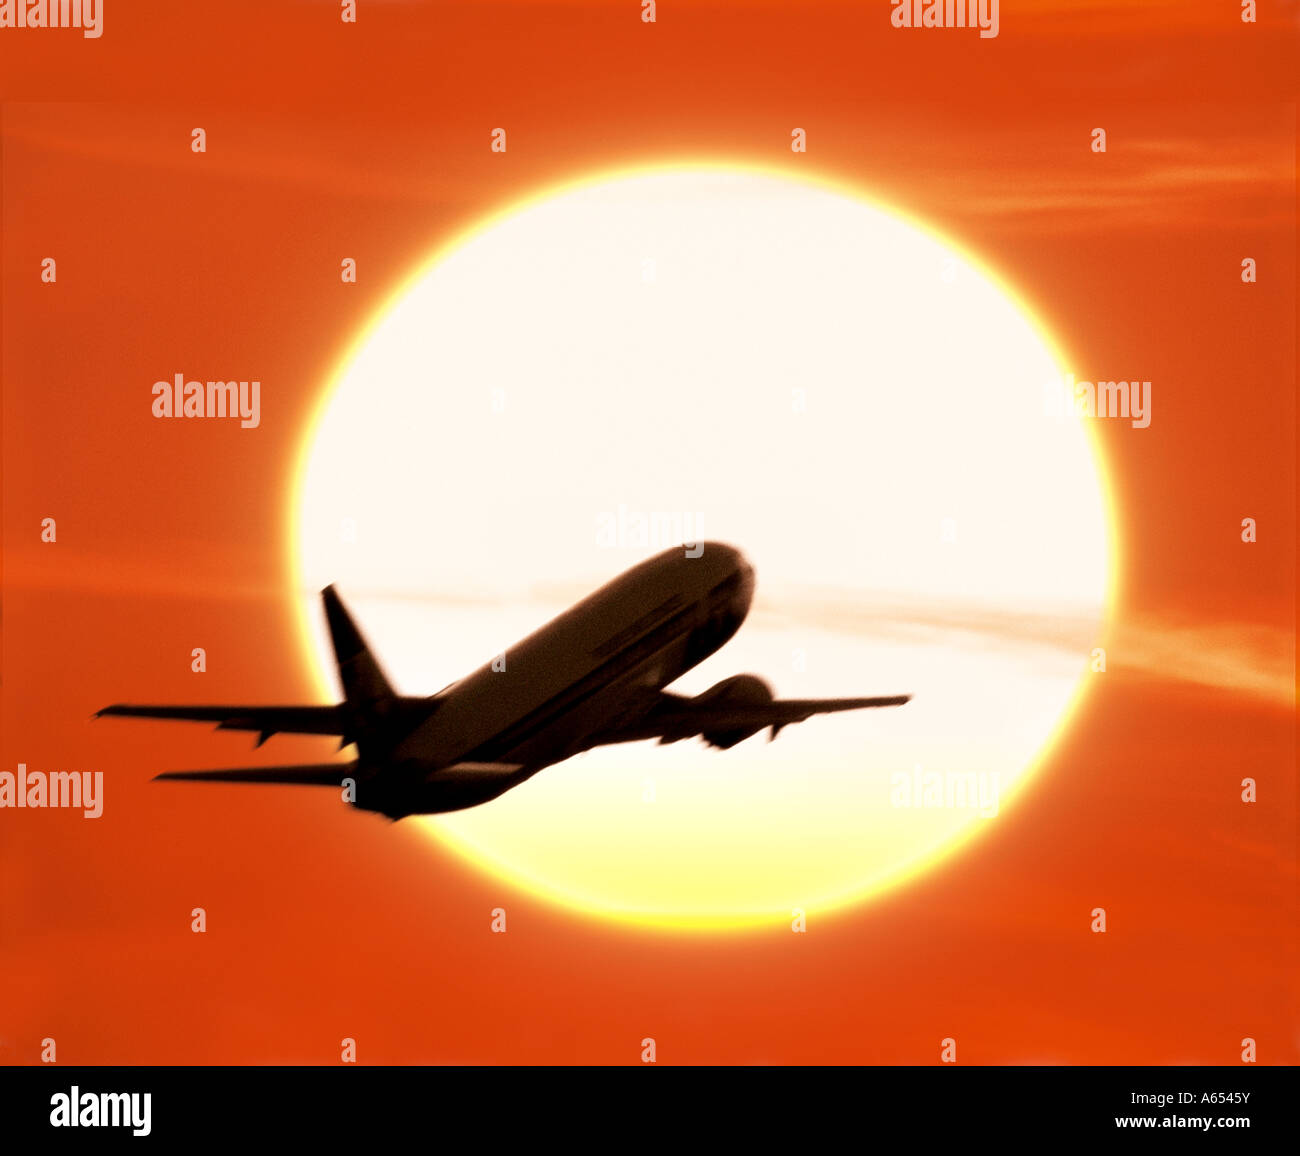 Avion au décollage silhouetté contre le soleil couchant Banque D'Images